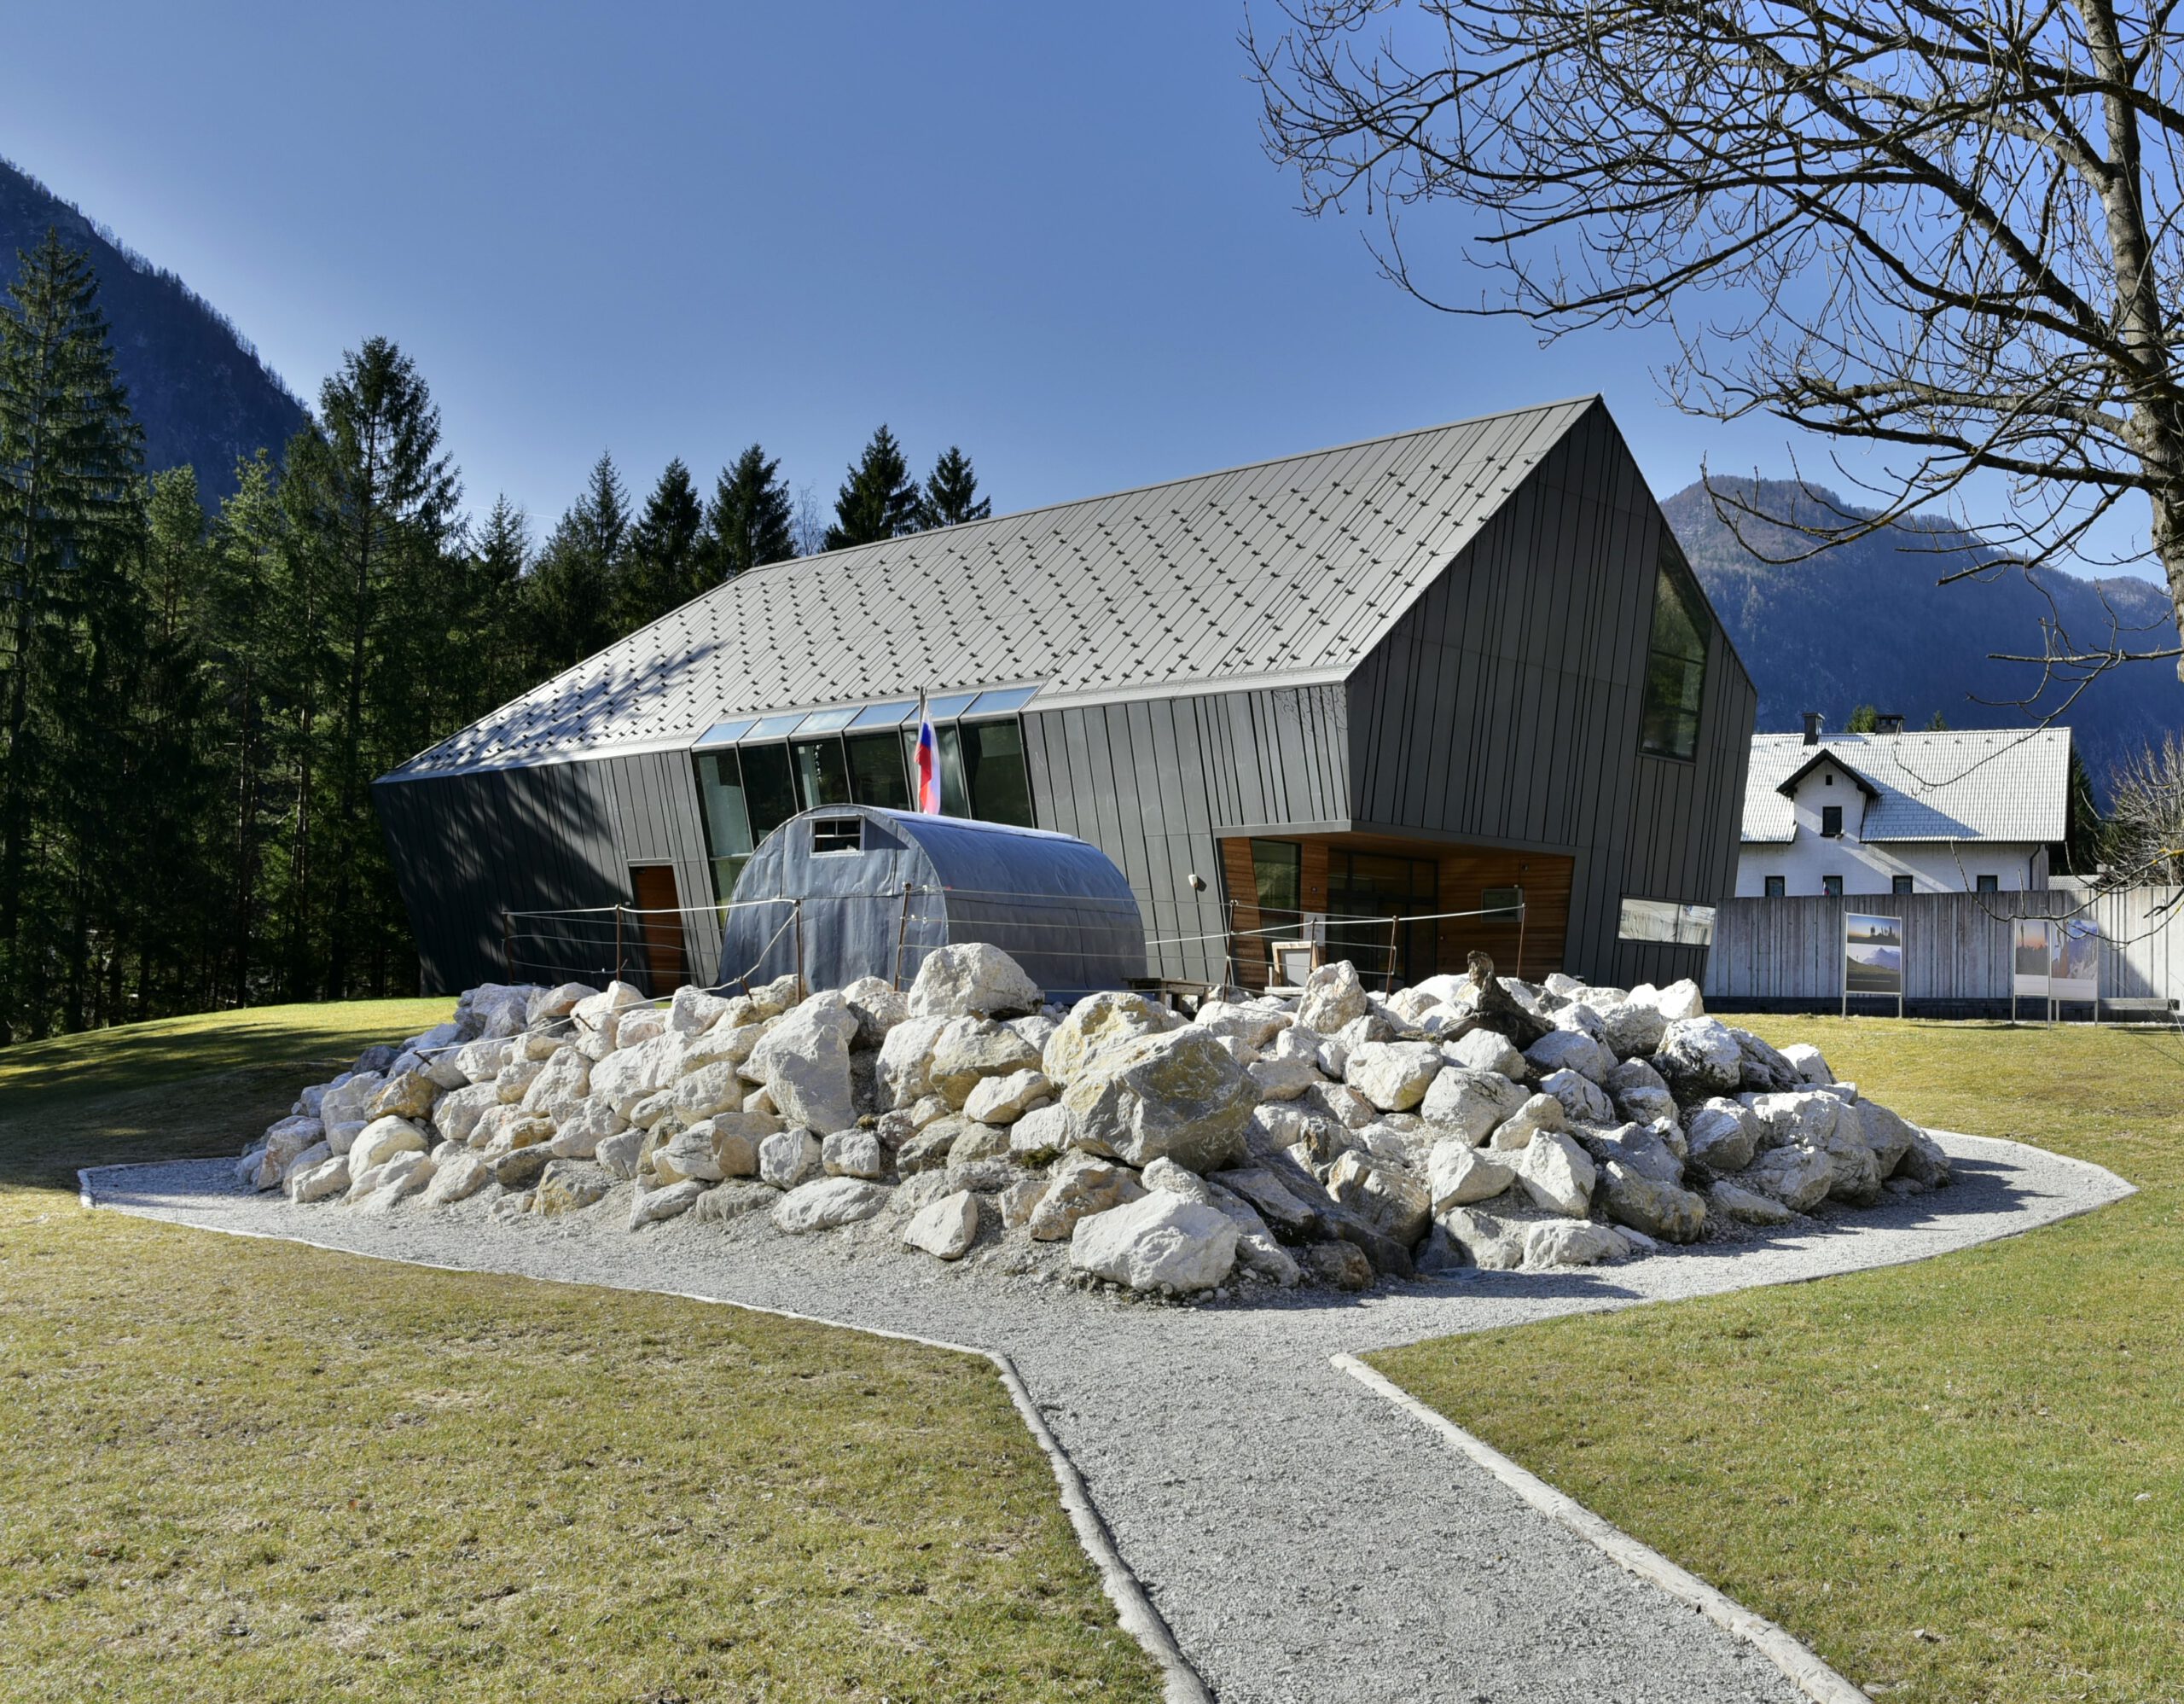 Pobeg v bivak – Slovenski planinski muzej